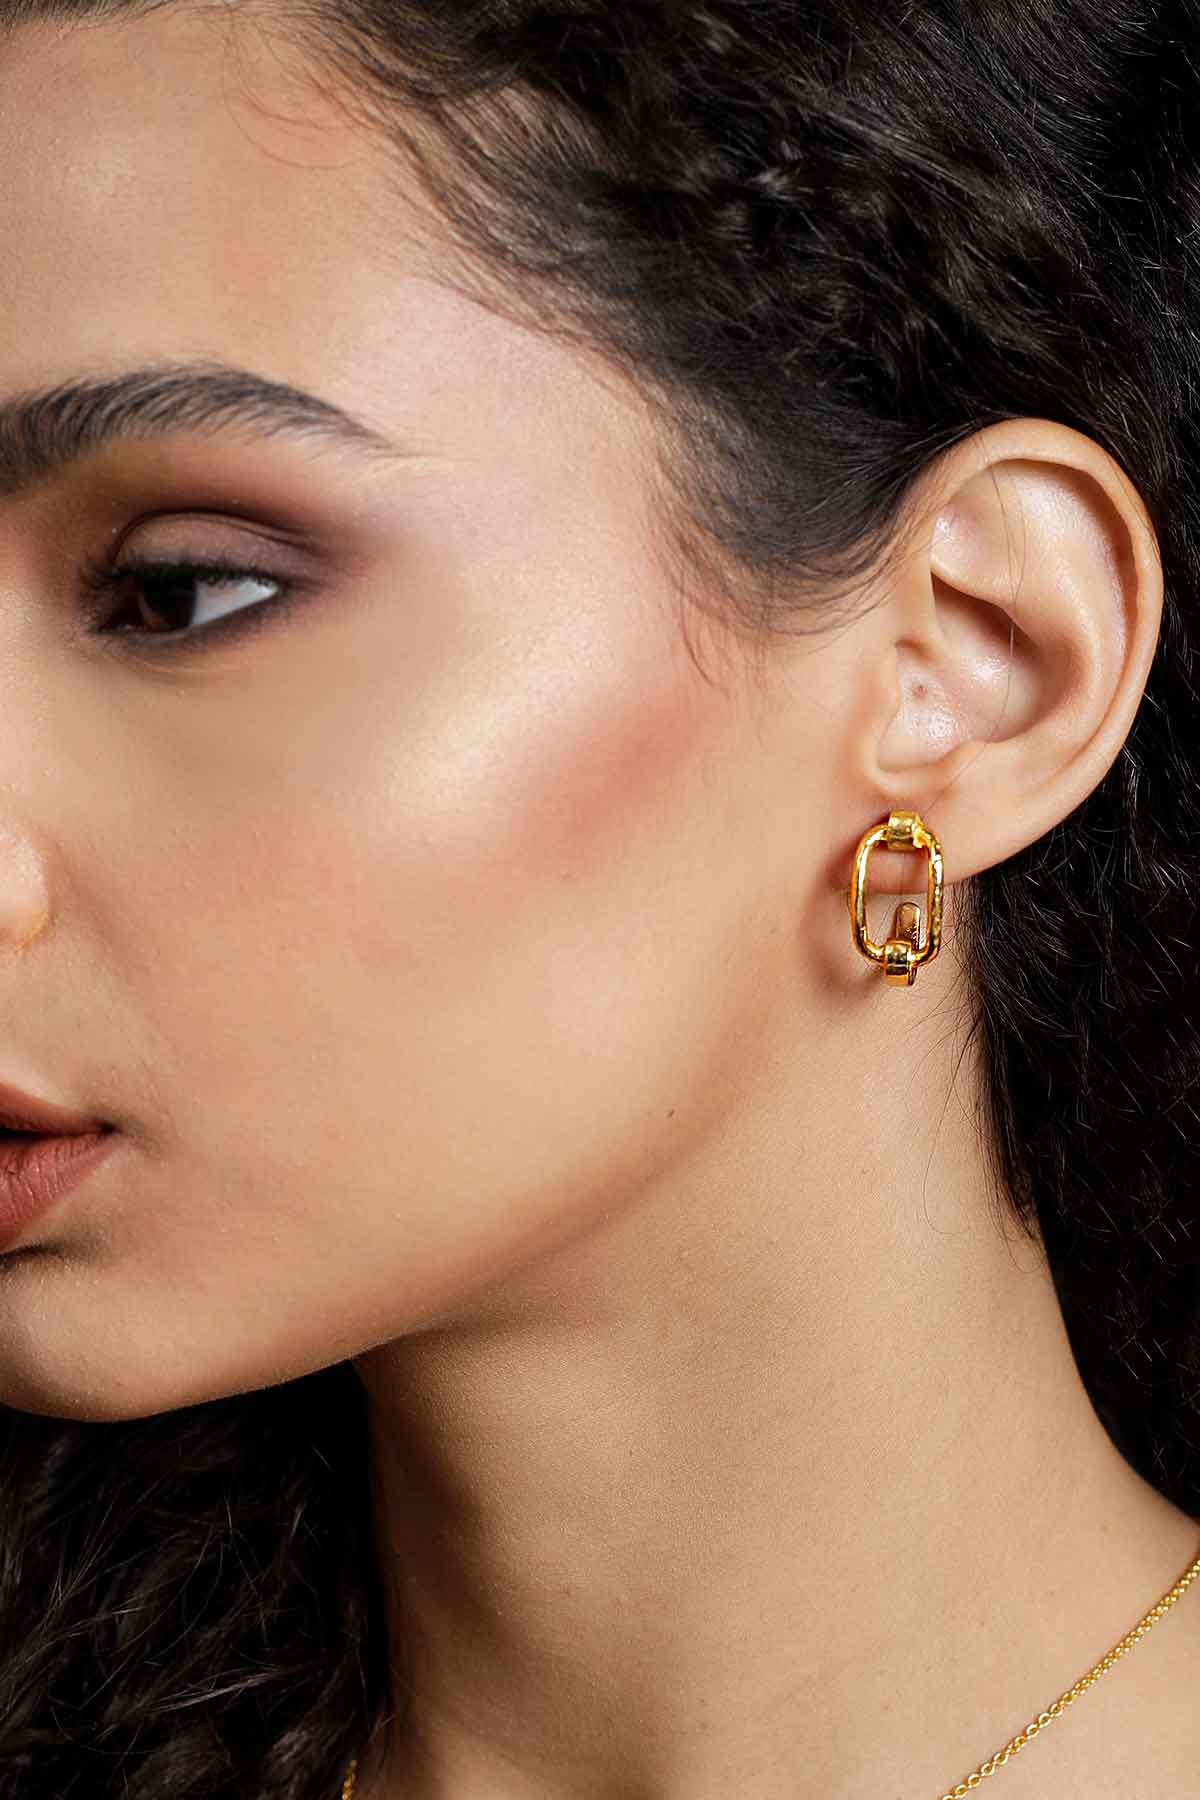 The Golden Twist Earrings